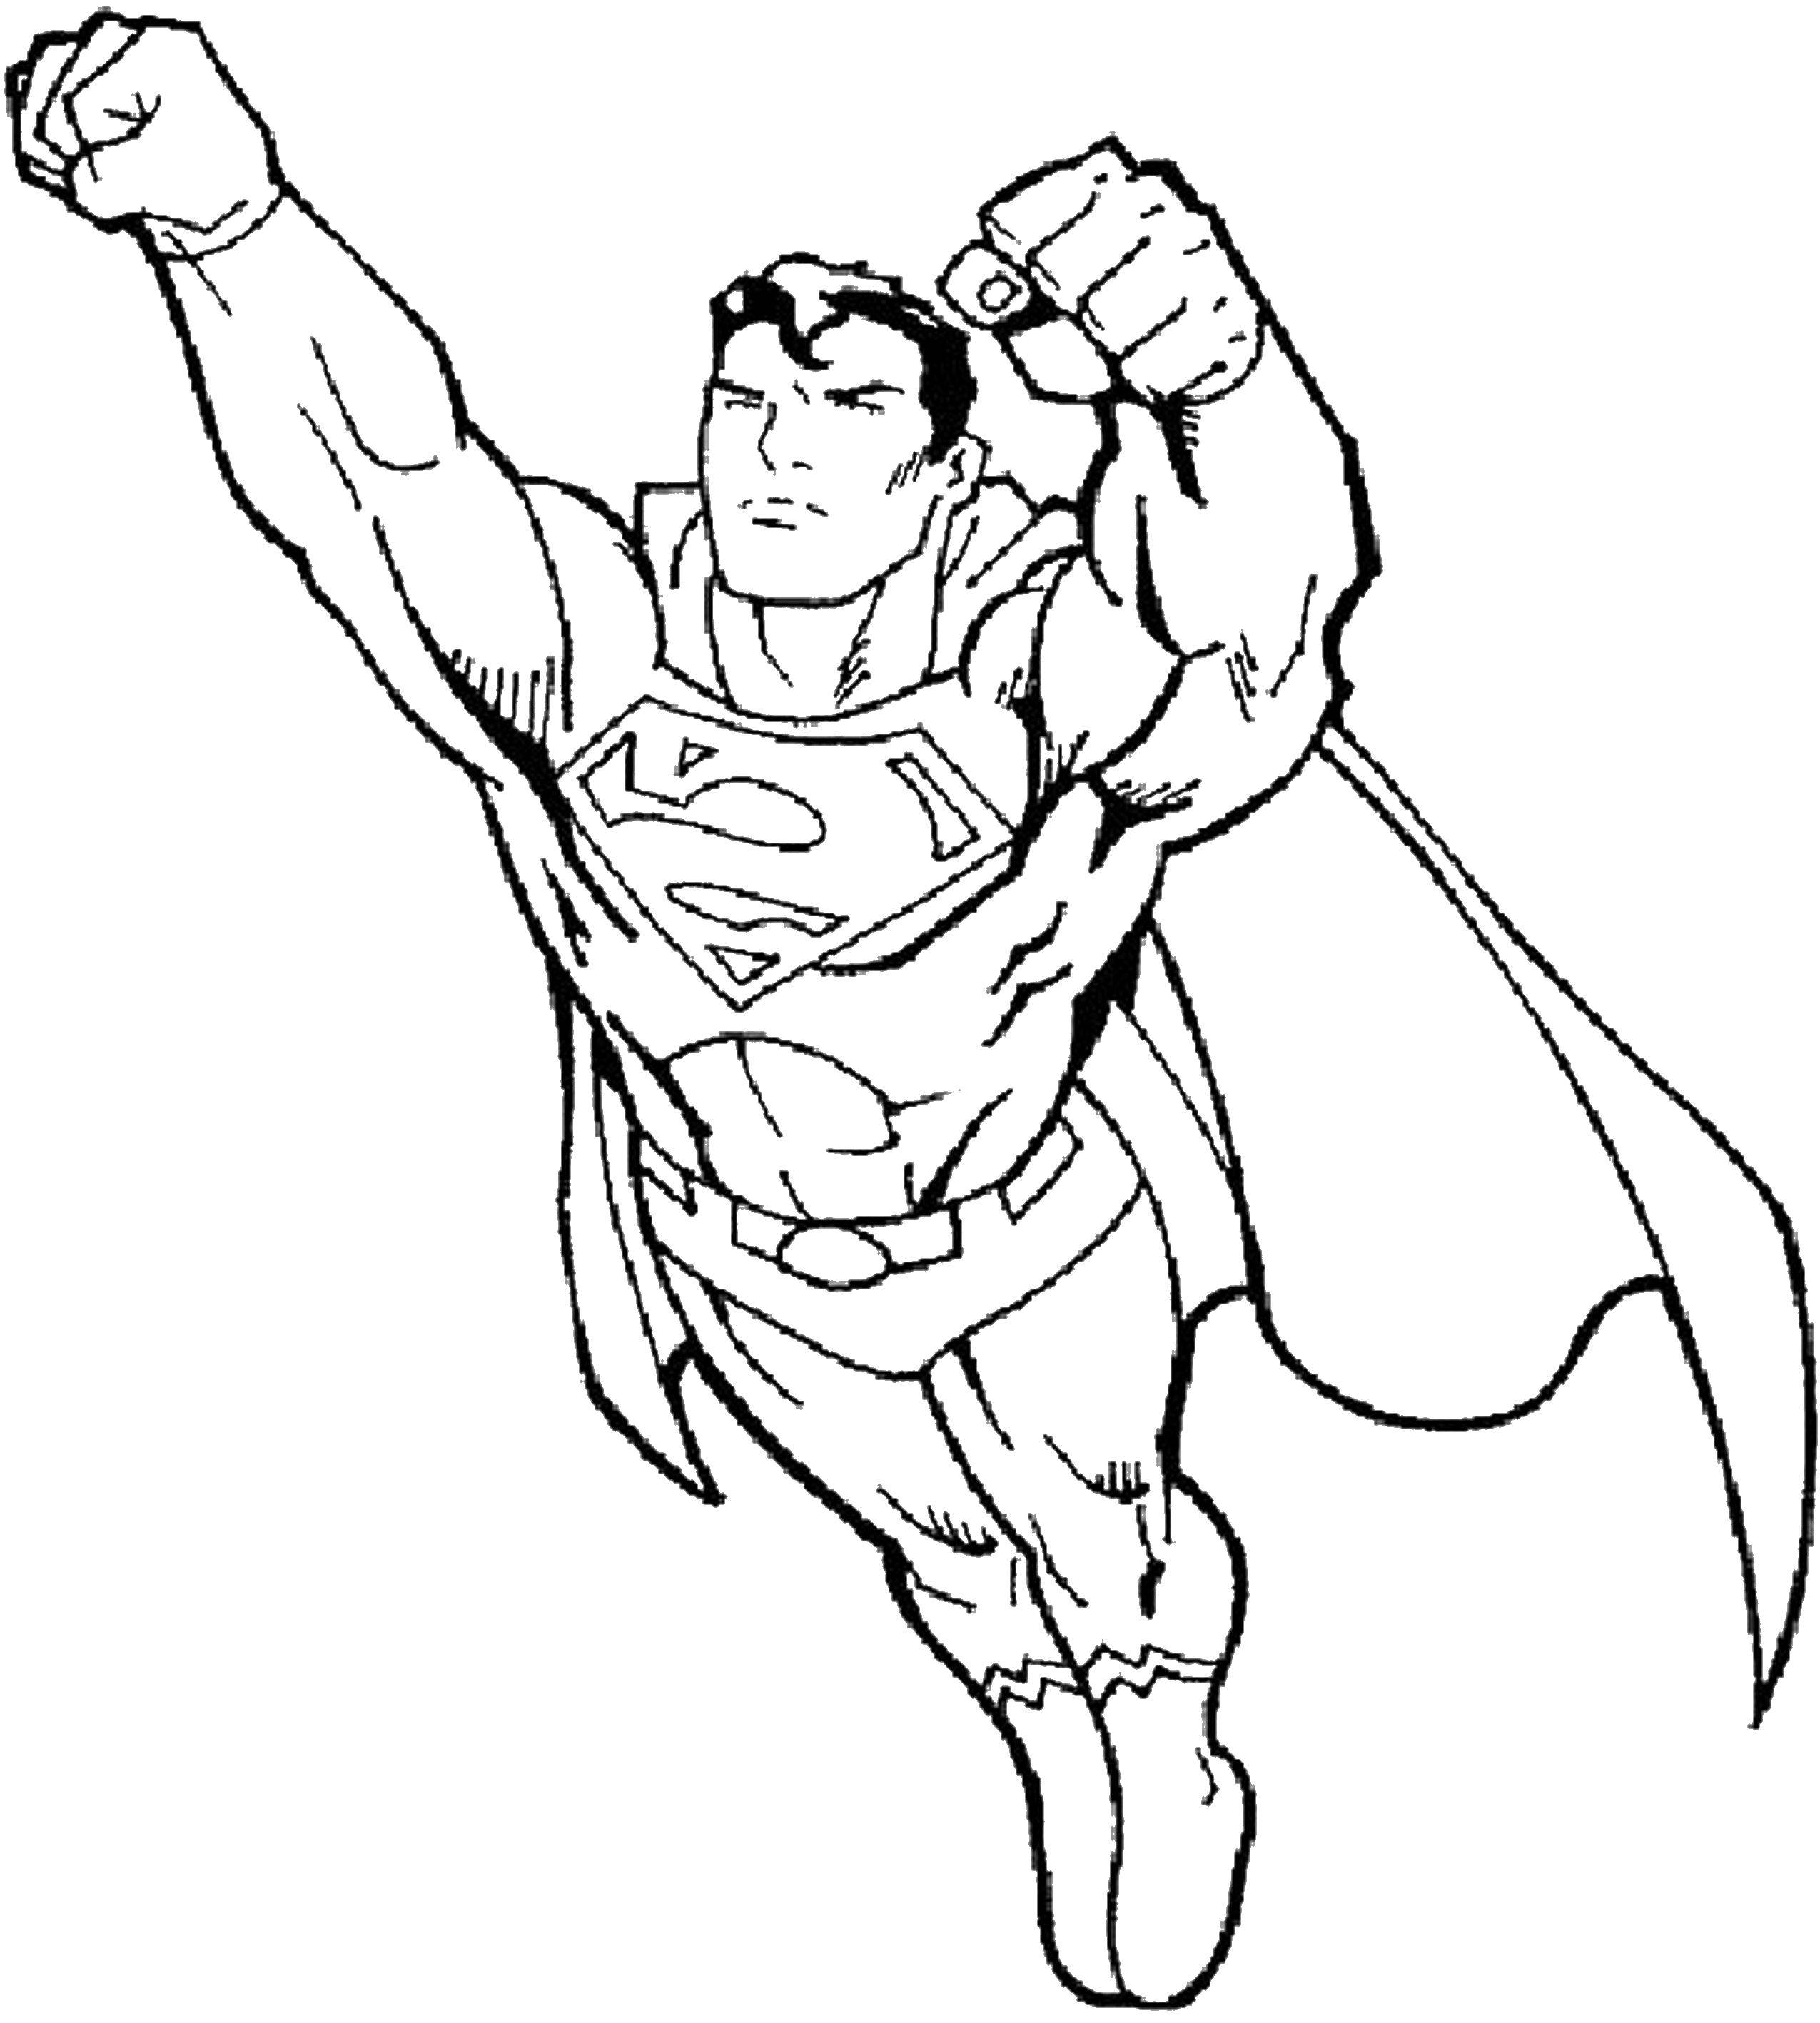 Розмальовки  Супер людина. Завантажити розмальовку супергерої, супермен, супер людина.  Роздрукувати ,Для хлопчиків,